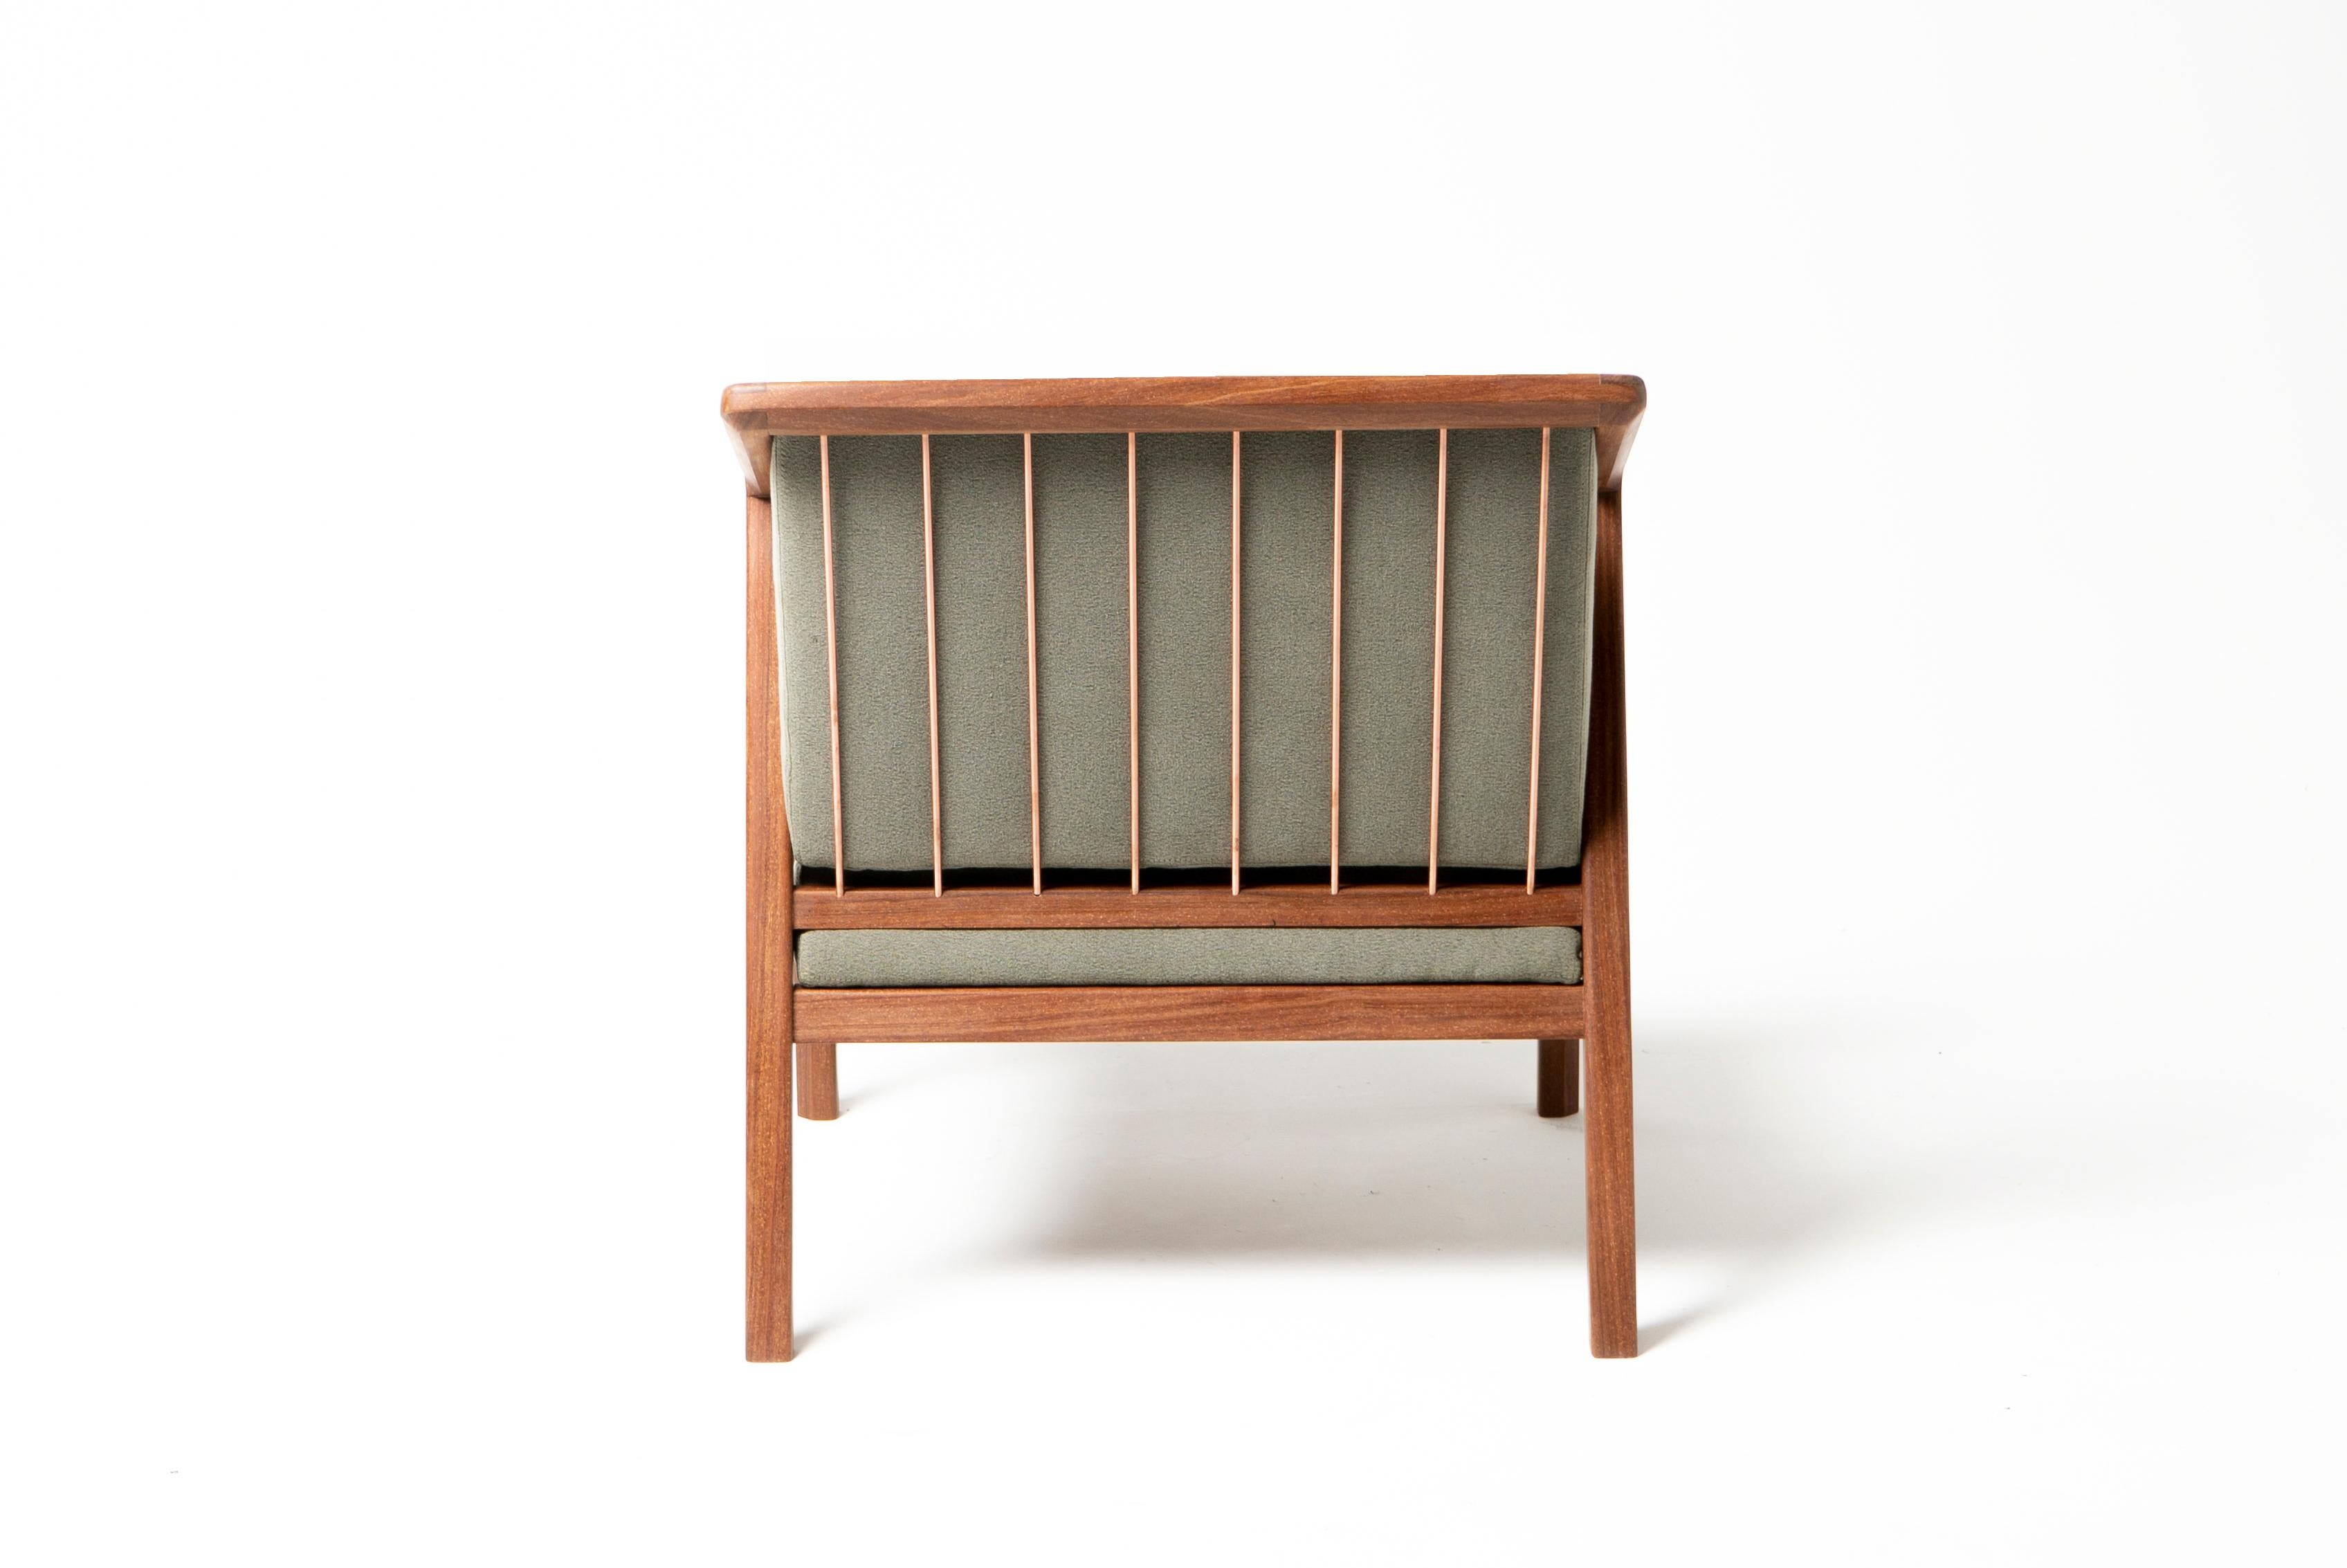 Un design minimaliste alliant structure et esthétique. Le fauteuil Canela, avec ses influences modernes et scandinaves du milieu du siècle dernier, constitue un ajout élégant à tout environnement, qu'il s'agisse d'un salon, d'une chambre à coucher